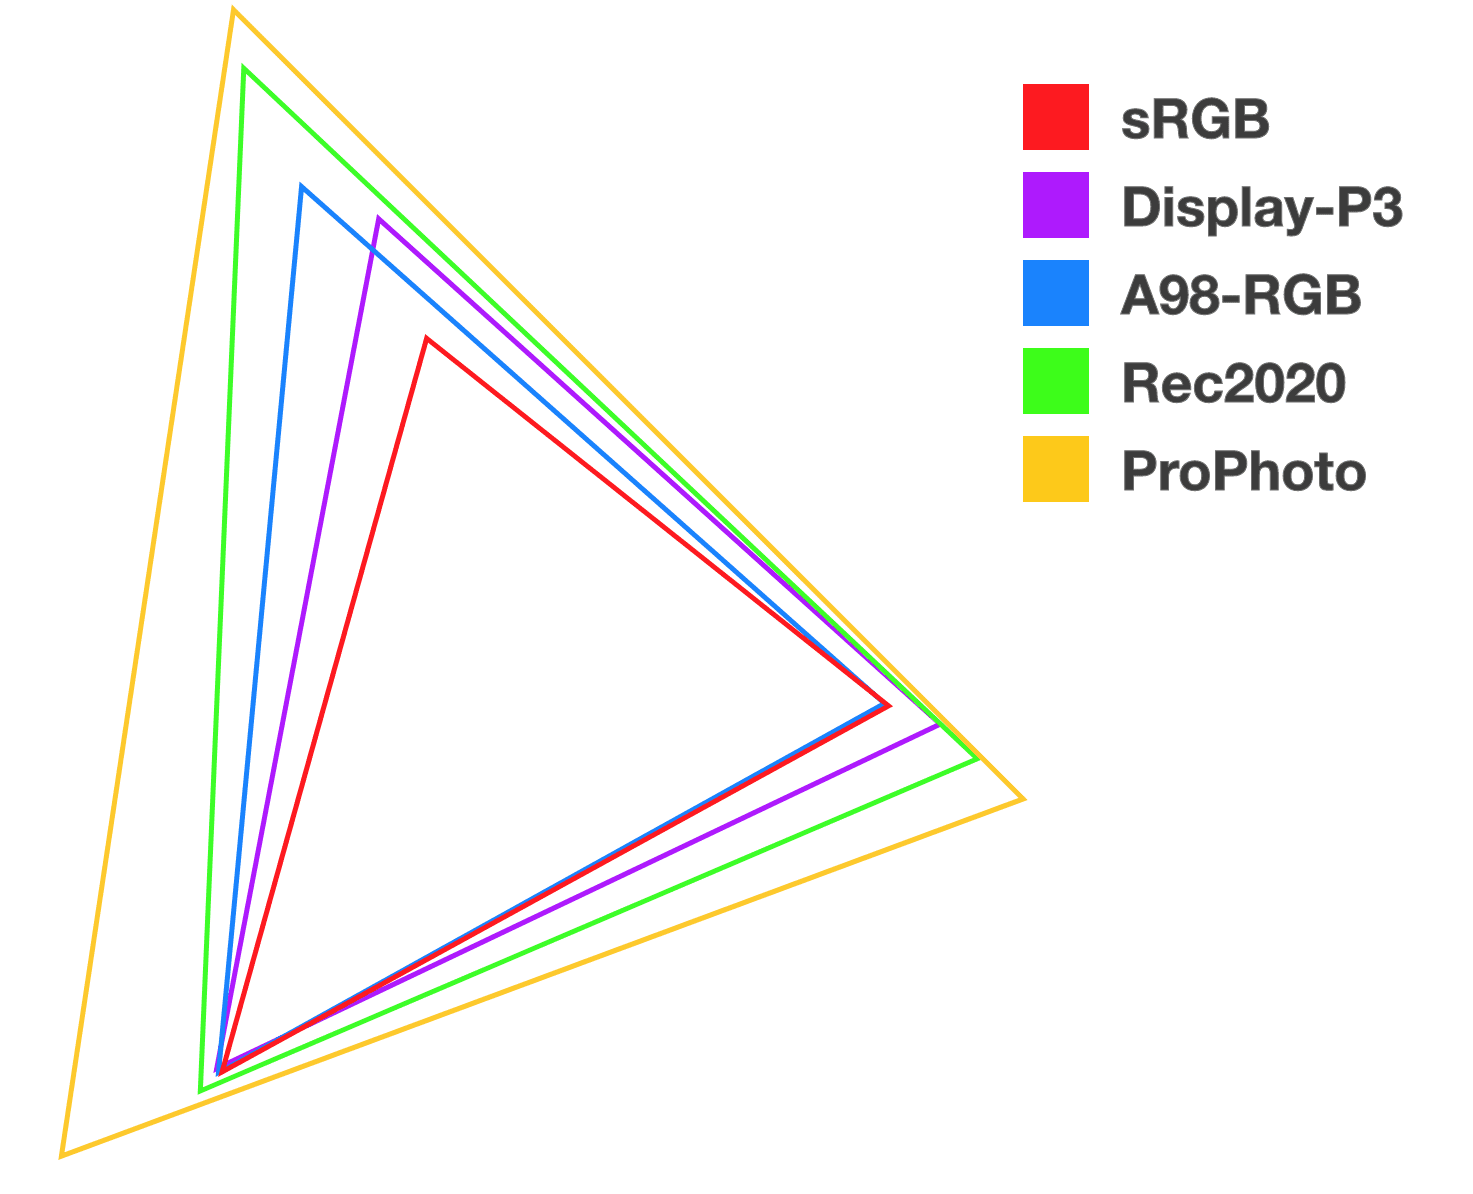 پنج مثلث انباشته با رنگ های مختلف برای نشان دادن رابطه و اندازه هر یک از فضاهای رنگی جدید.